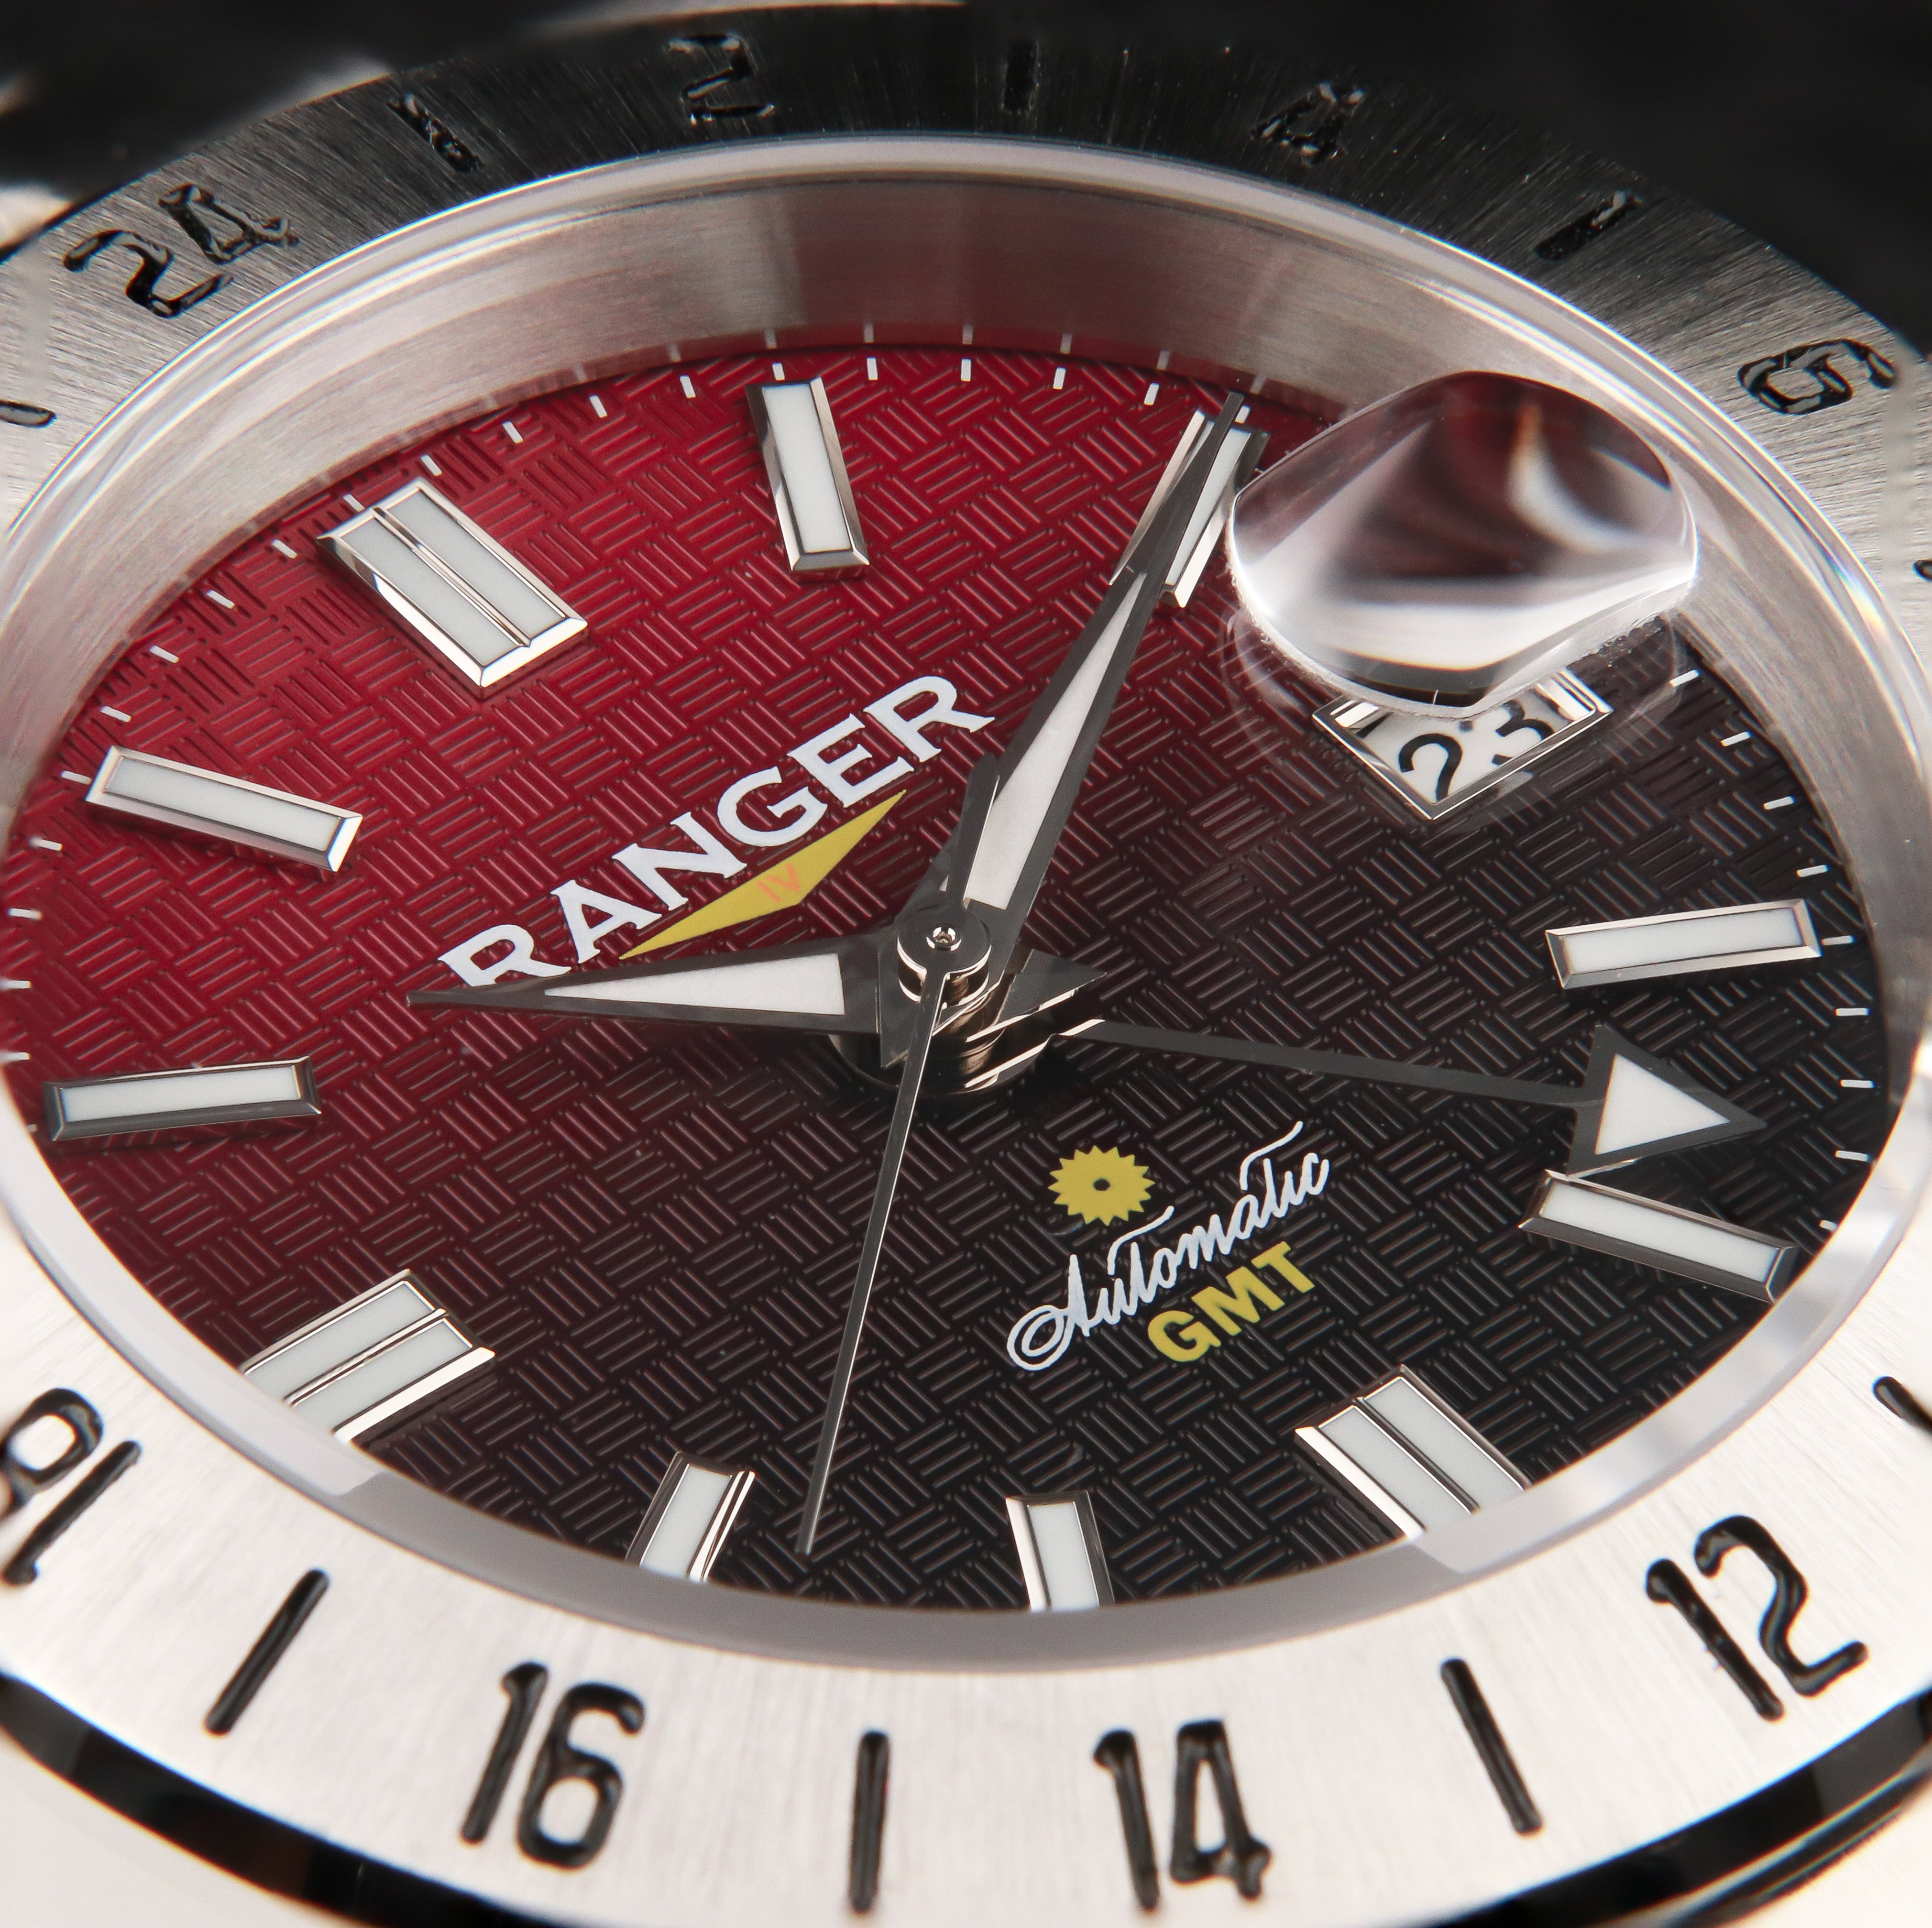 Ranger IV 赤富士 プロダクトページ。テクスチャーのあるダイアルとグラデーションのダイアルを備えたGMT自動巻き腕時計の画像